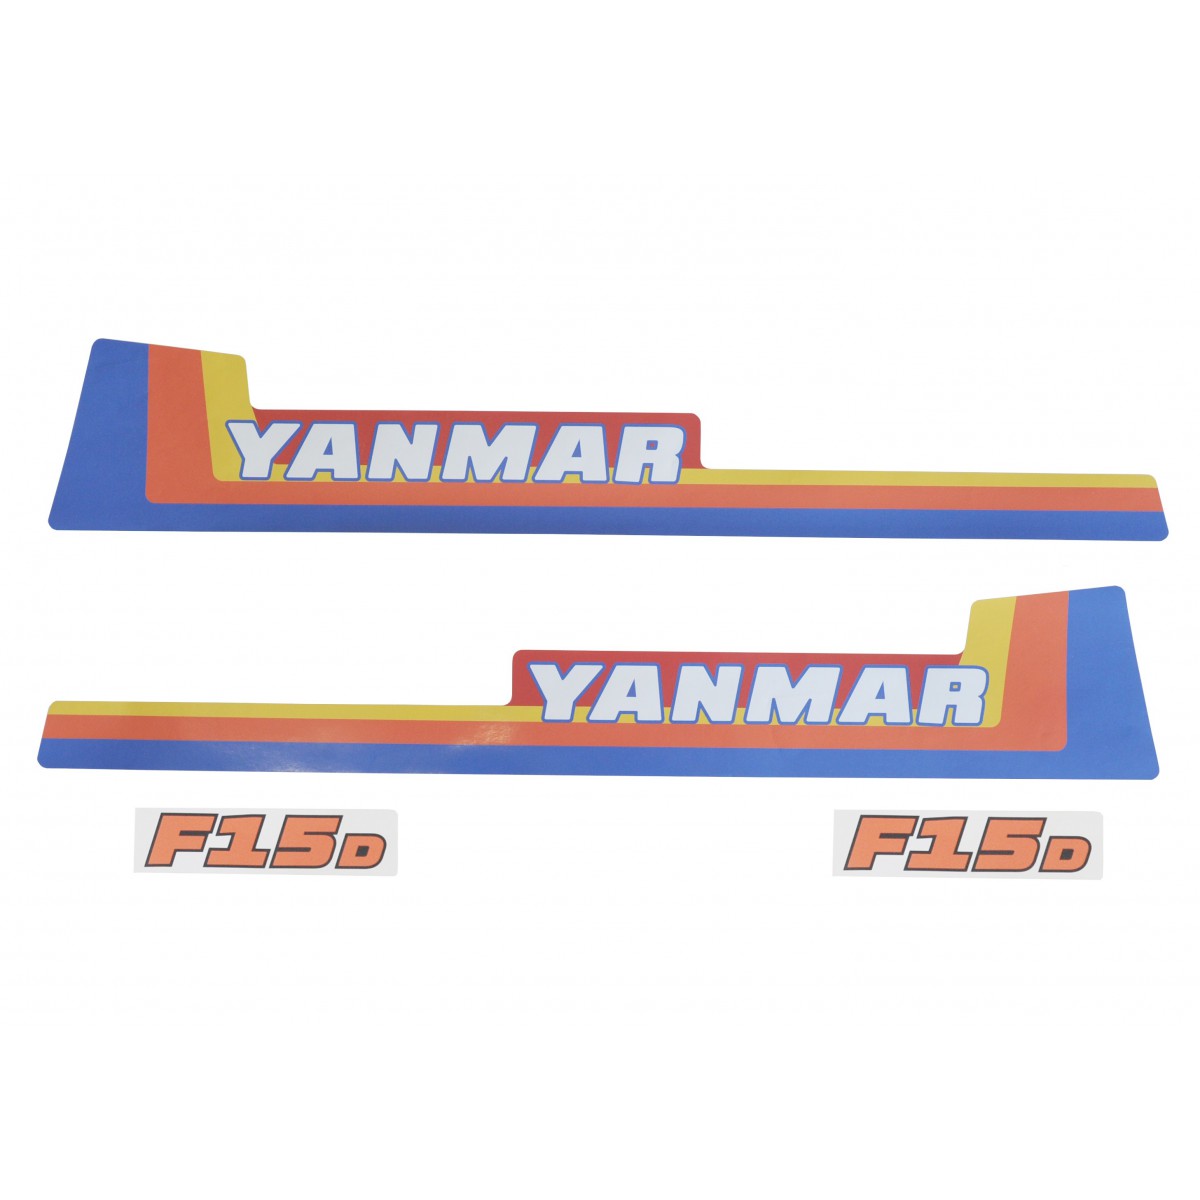 Obtisky Yanmar F15D